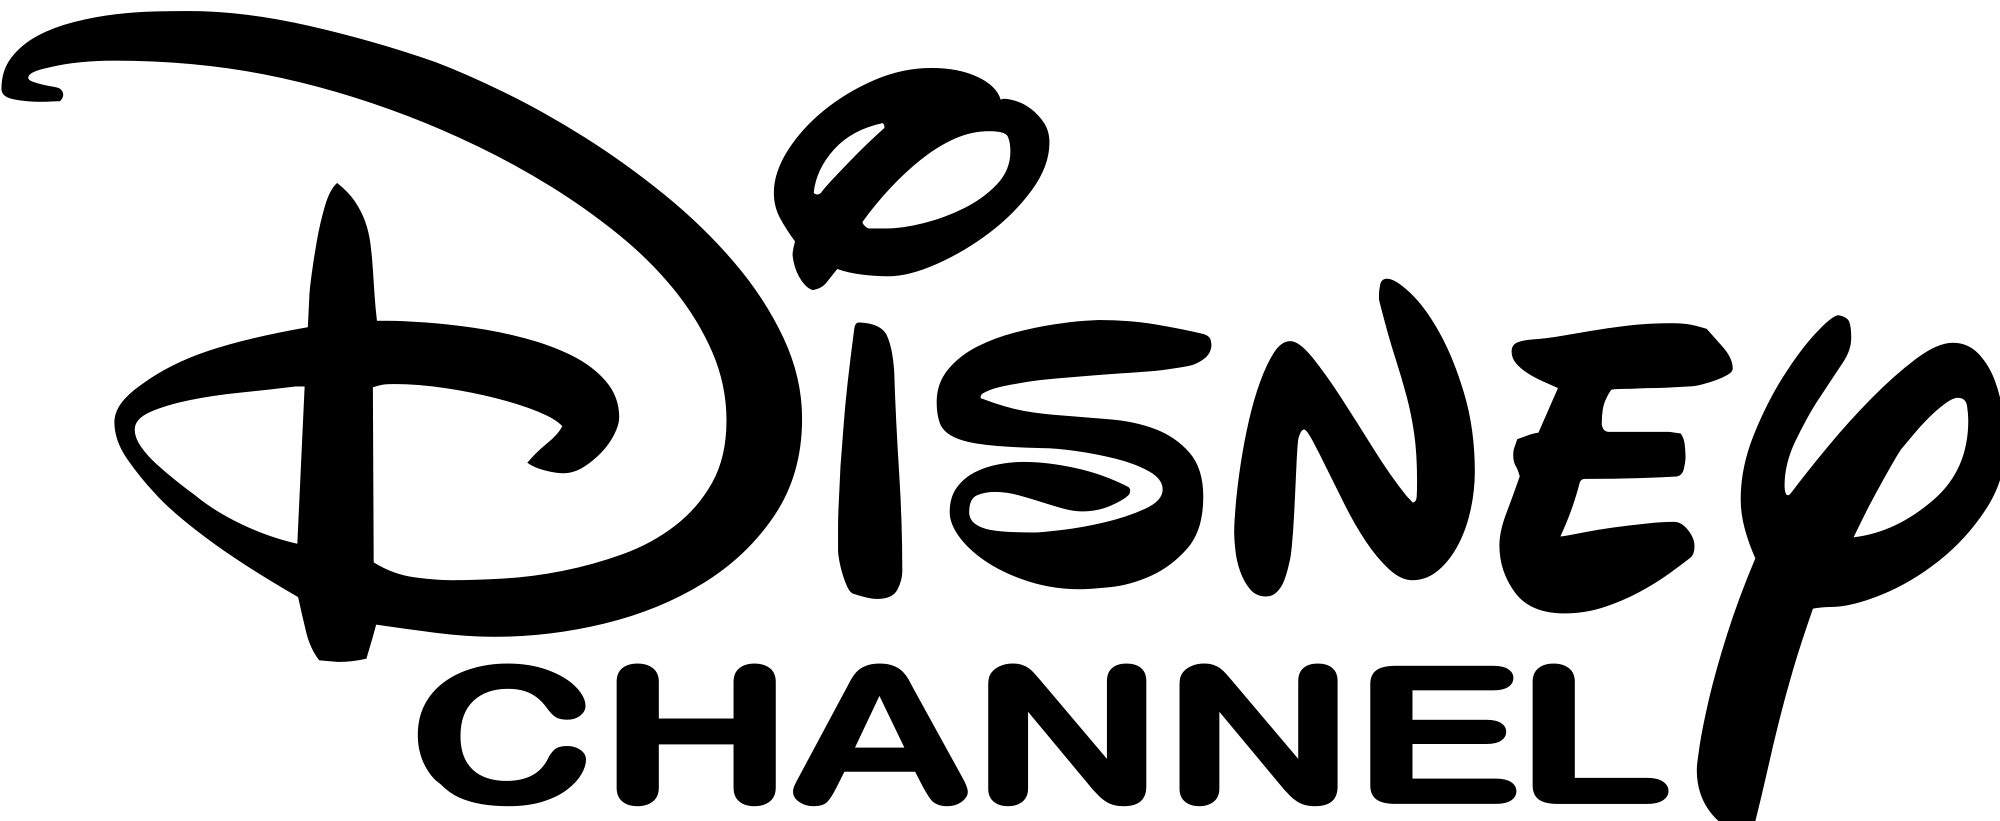 Walt Disney Original Logo - Walt Disney logo PNG image free download